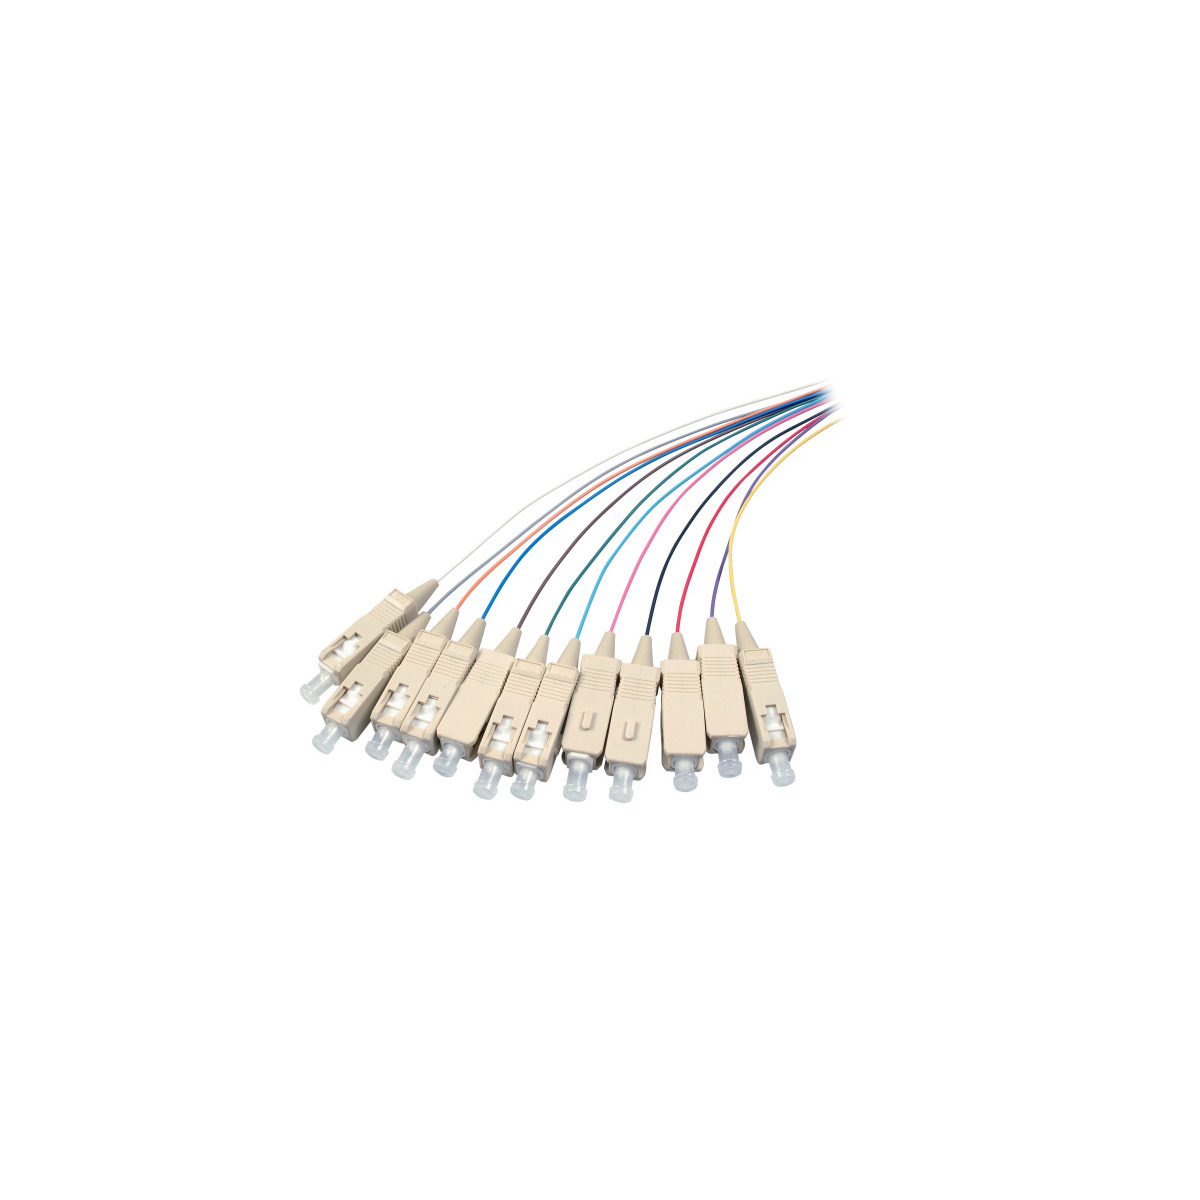 COMMUNIK Kabel Pigtails / SC Glasfaserkabel, Faserpigtails, 2 m